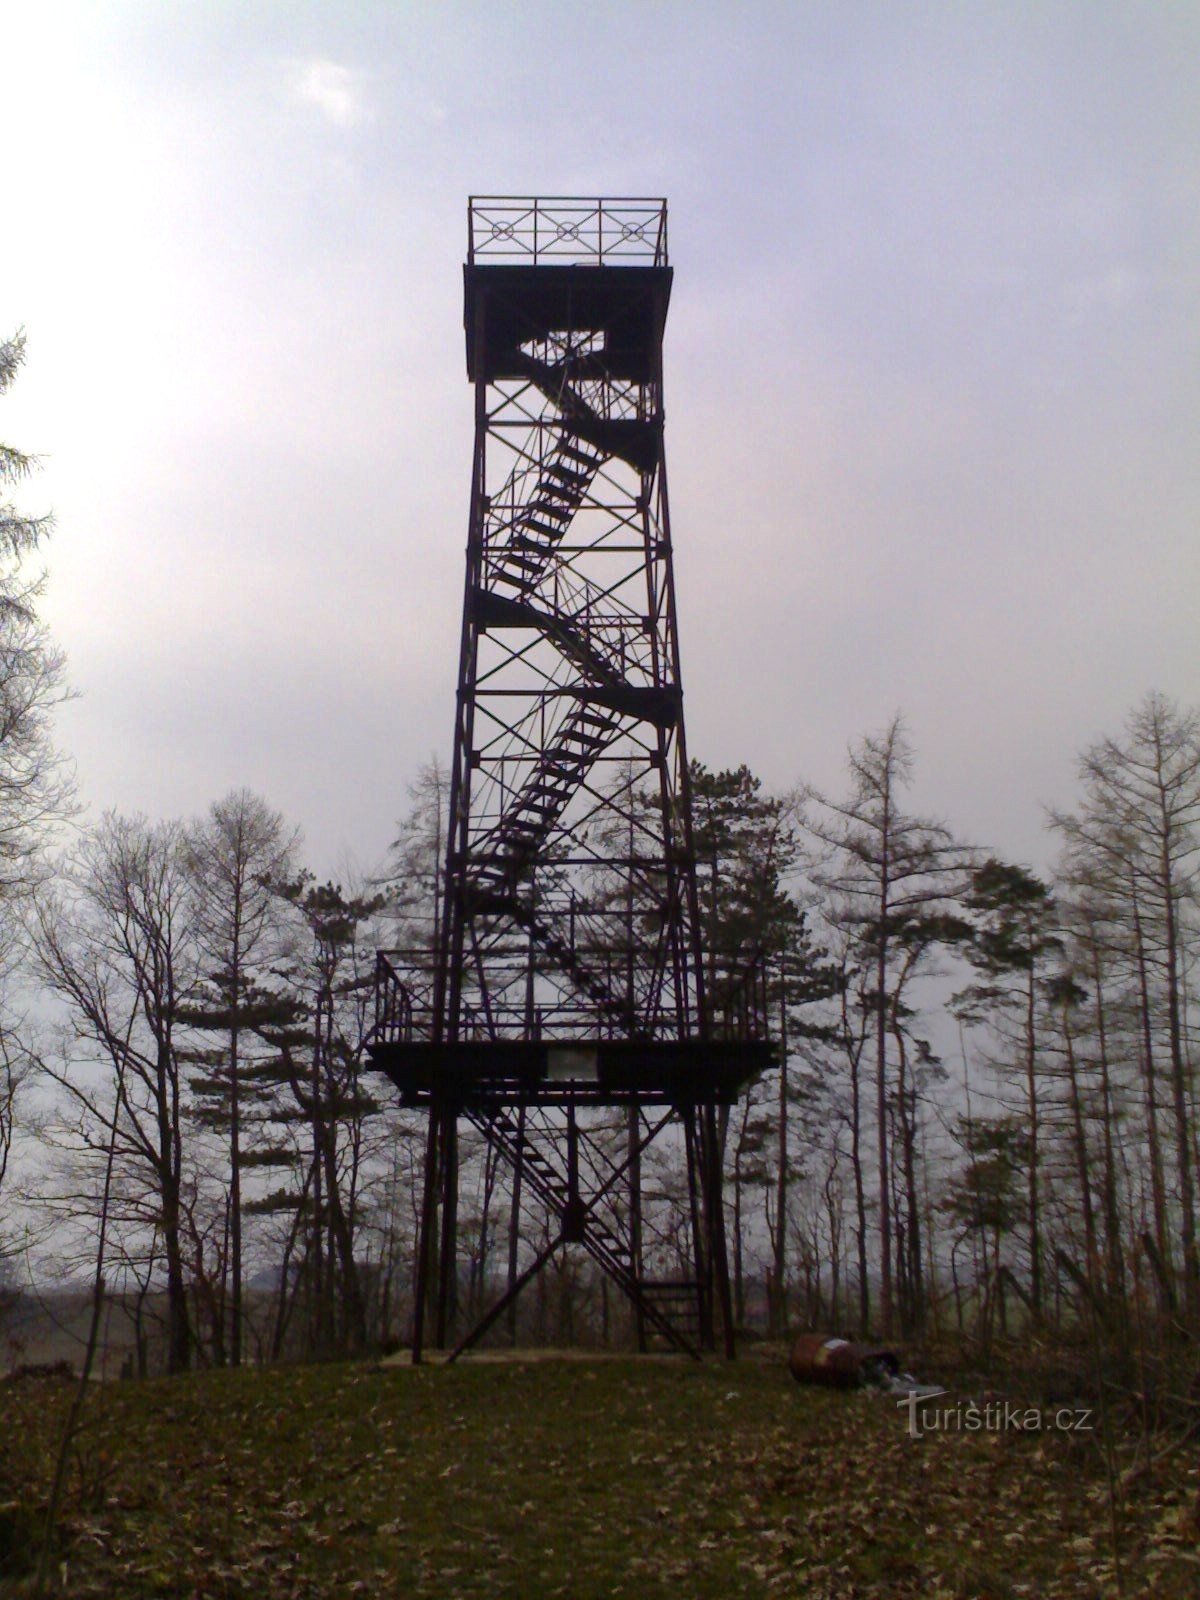 Libníkovice - näkötorni